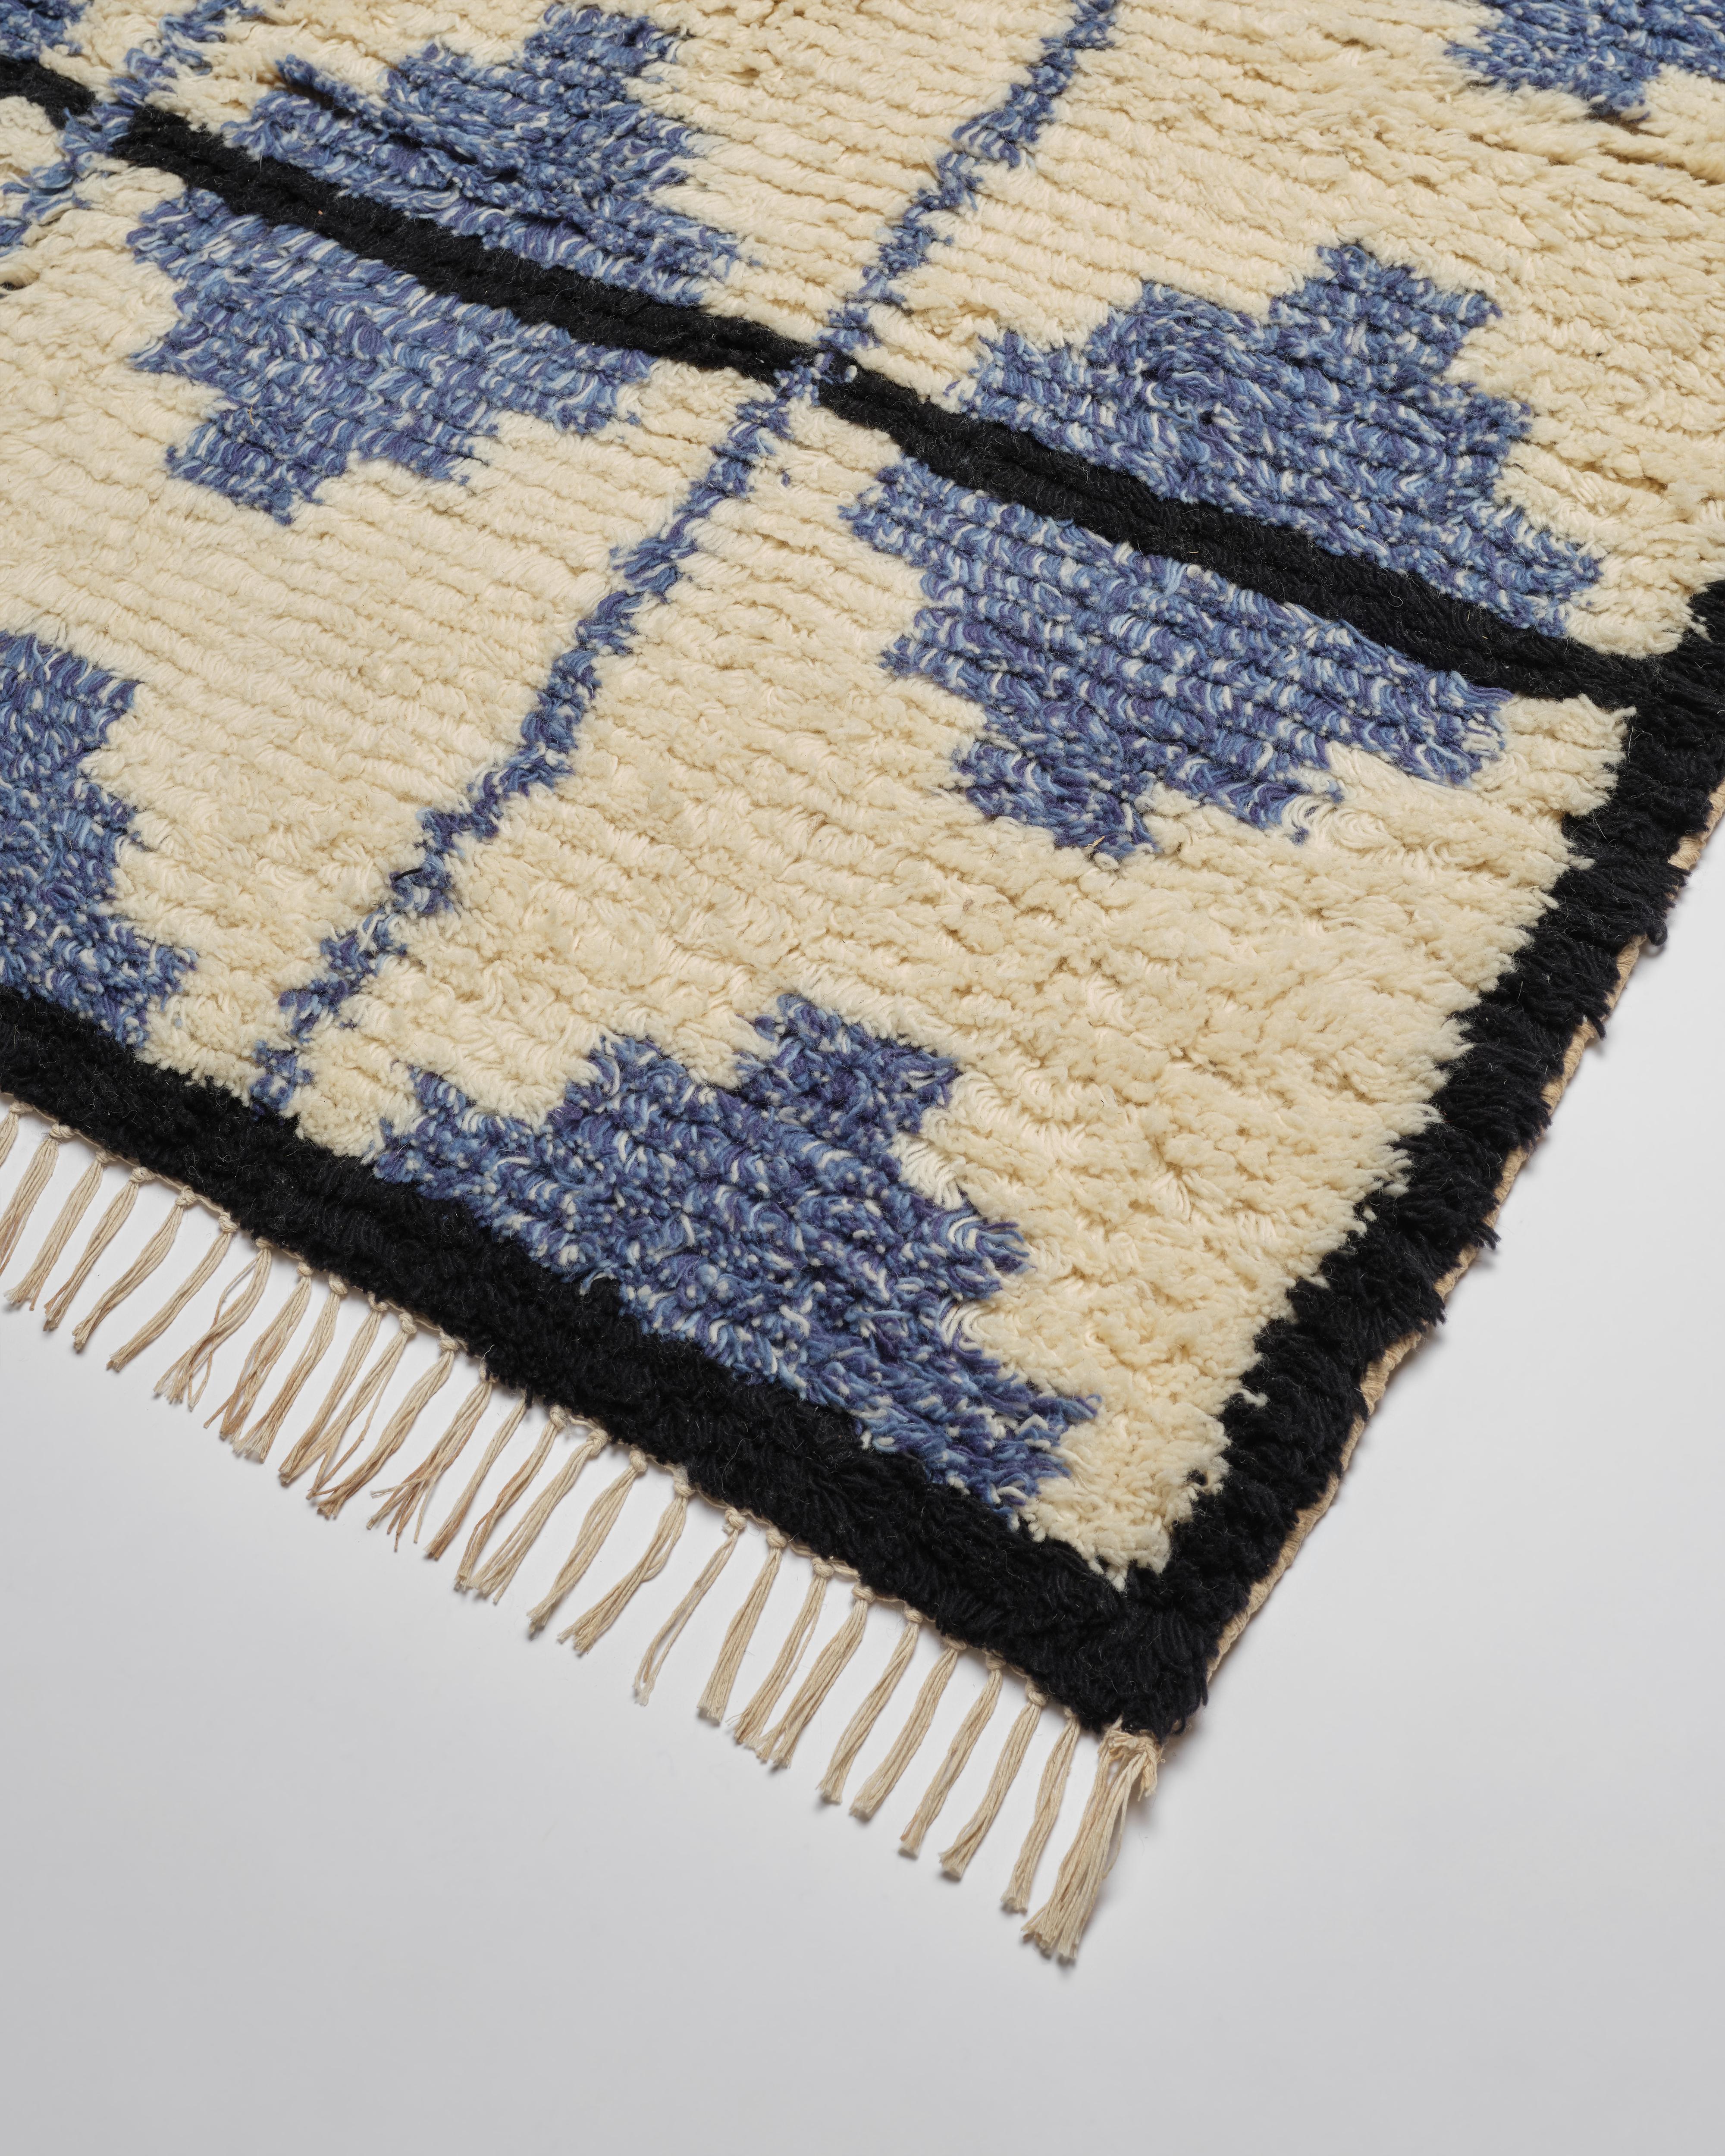 Unsere wunderschönen Teppiche aus Wolle und Baumwolle im marokkanischen Stil werden in Jaipur, Indien, fachmännisch handgeknüpft. Das Kachelmuster aus Creme, Blau und Schwarz ist schick und raffiniert mit einem Hauch von Bohème. Erhältlich in den